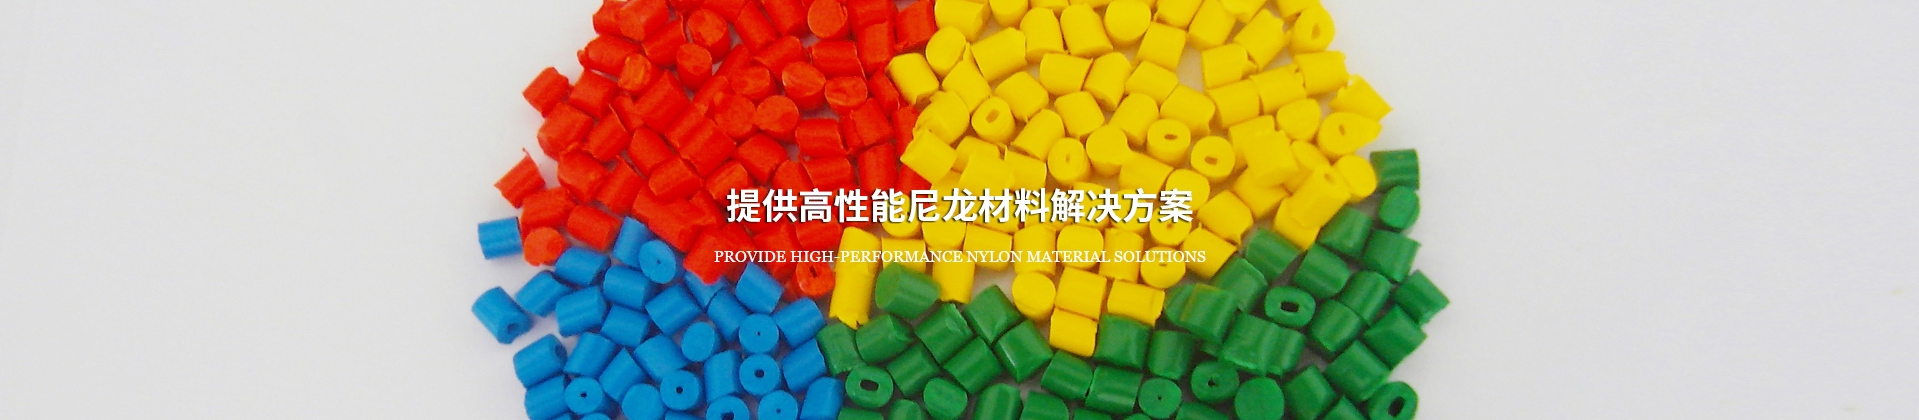 产品展示 - 上海神马塑料科技有限公司